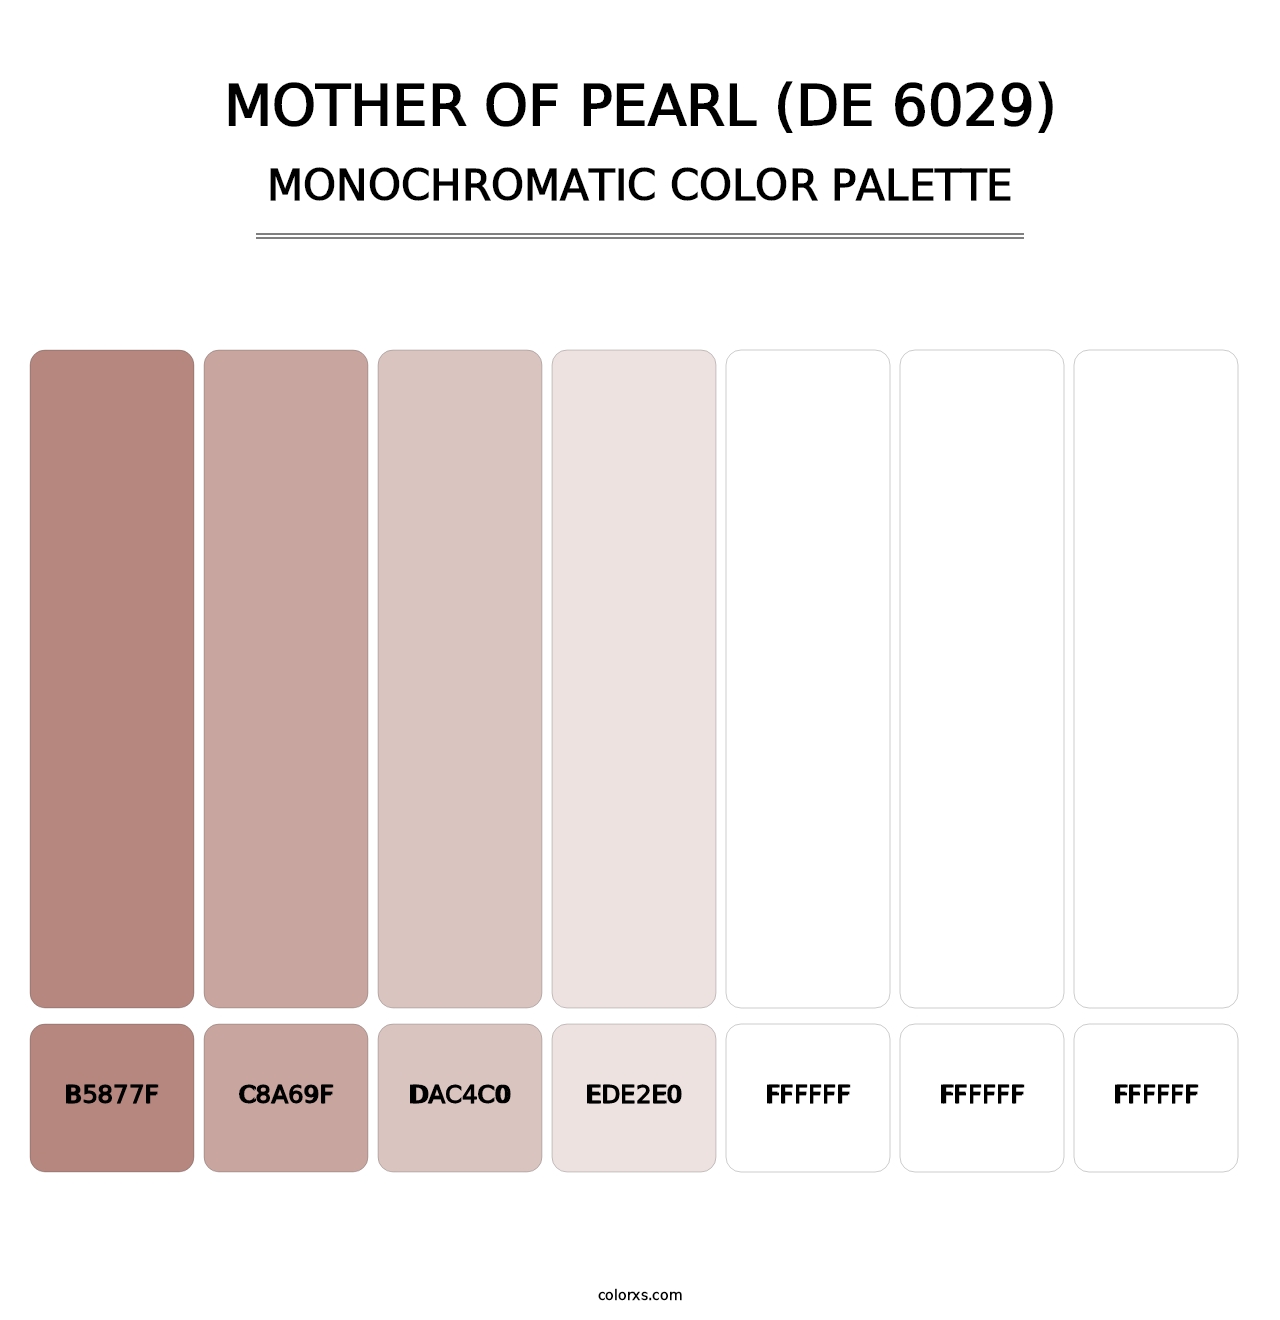 Mother of Pearl (DE 6029) - Monochromatic Color Palette